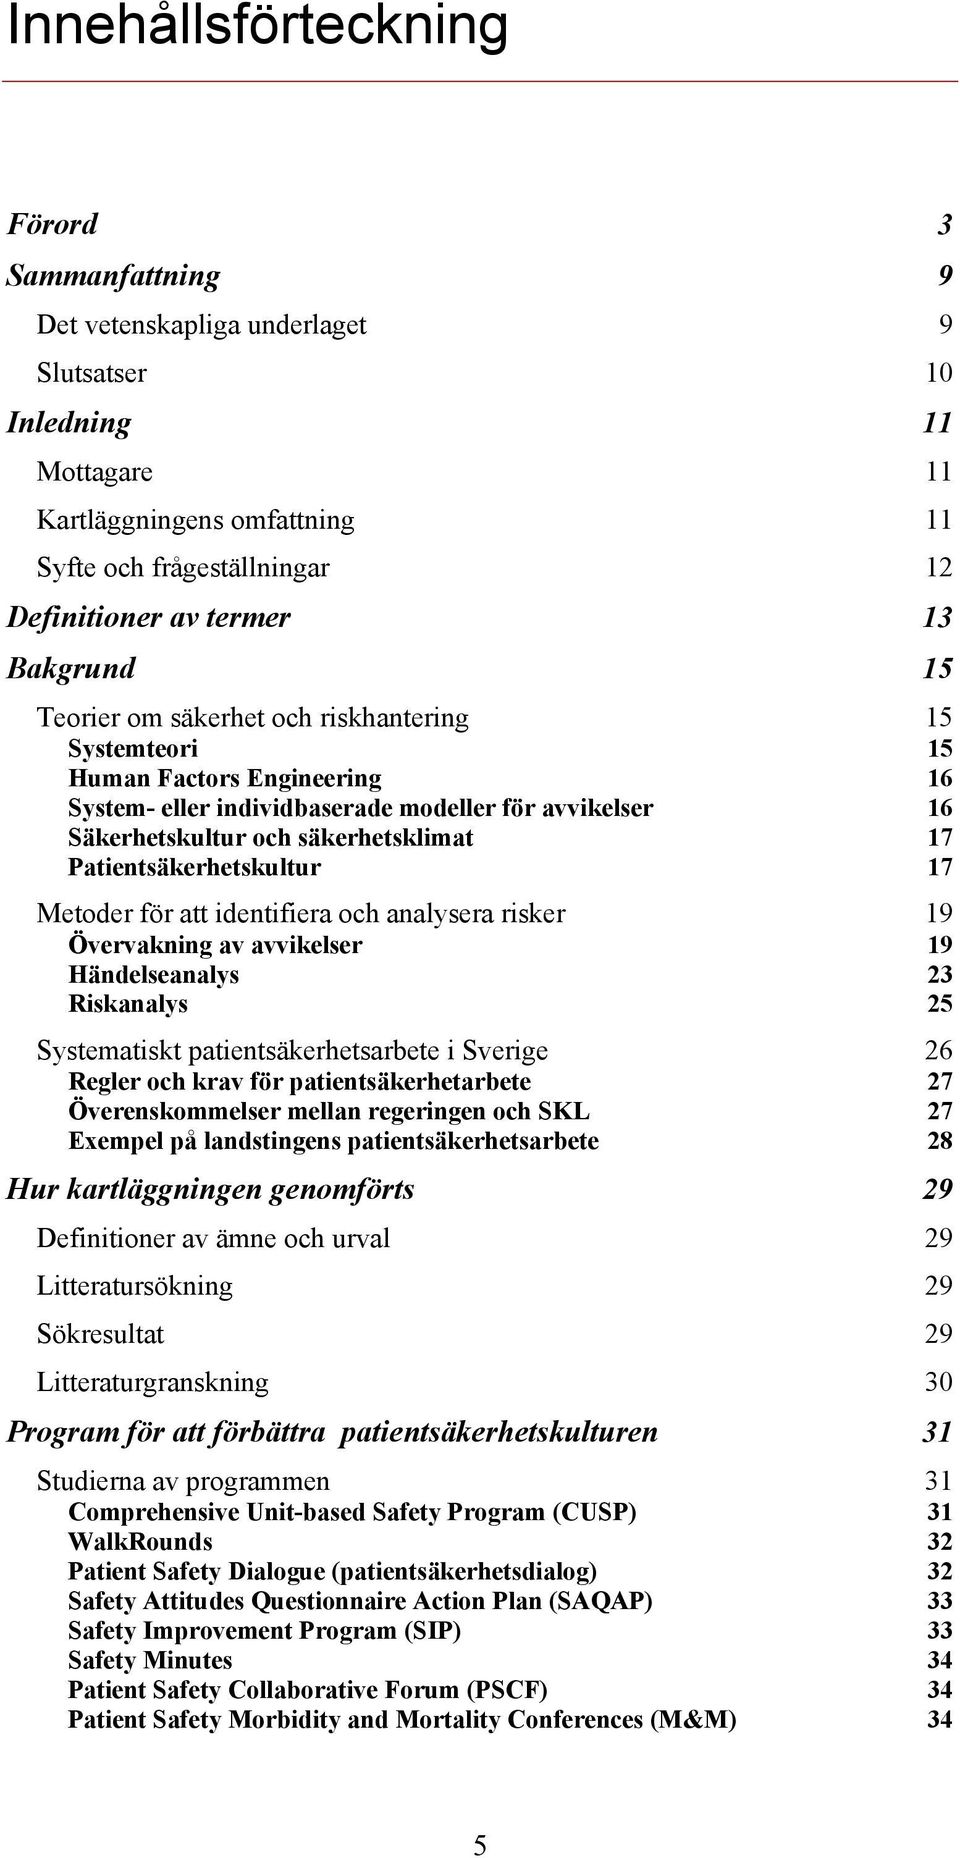 17 Patientsäkerhetskultur 17 Metoder för att identifiera och analysera risker 19 Övervakning av avvikelser 19 Händelseanalys 23 Riskanalys 25 Systematiskt patientsäkerhetsarbete i Sverige 26 Regler